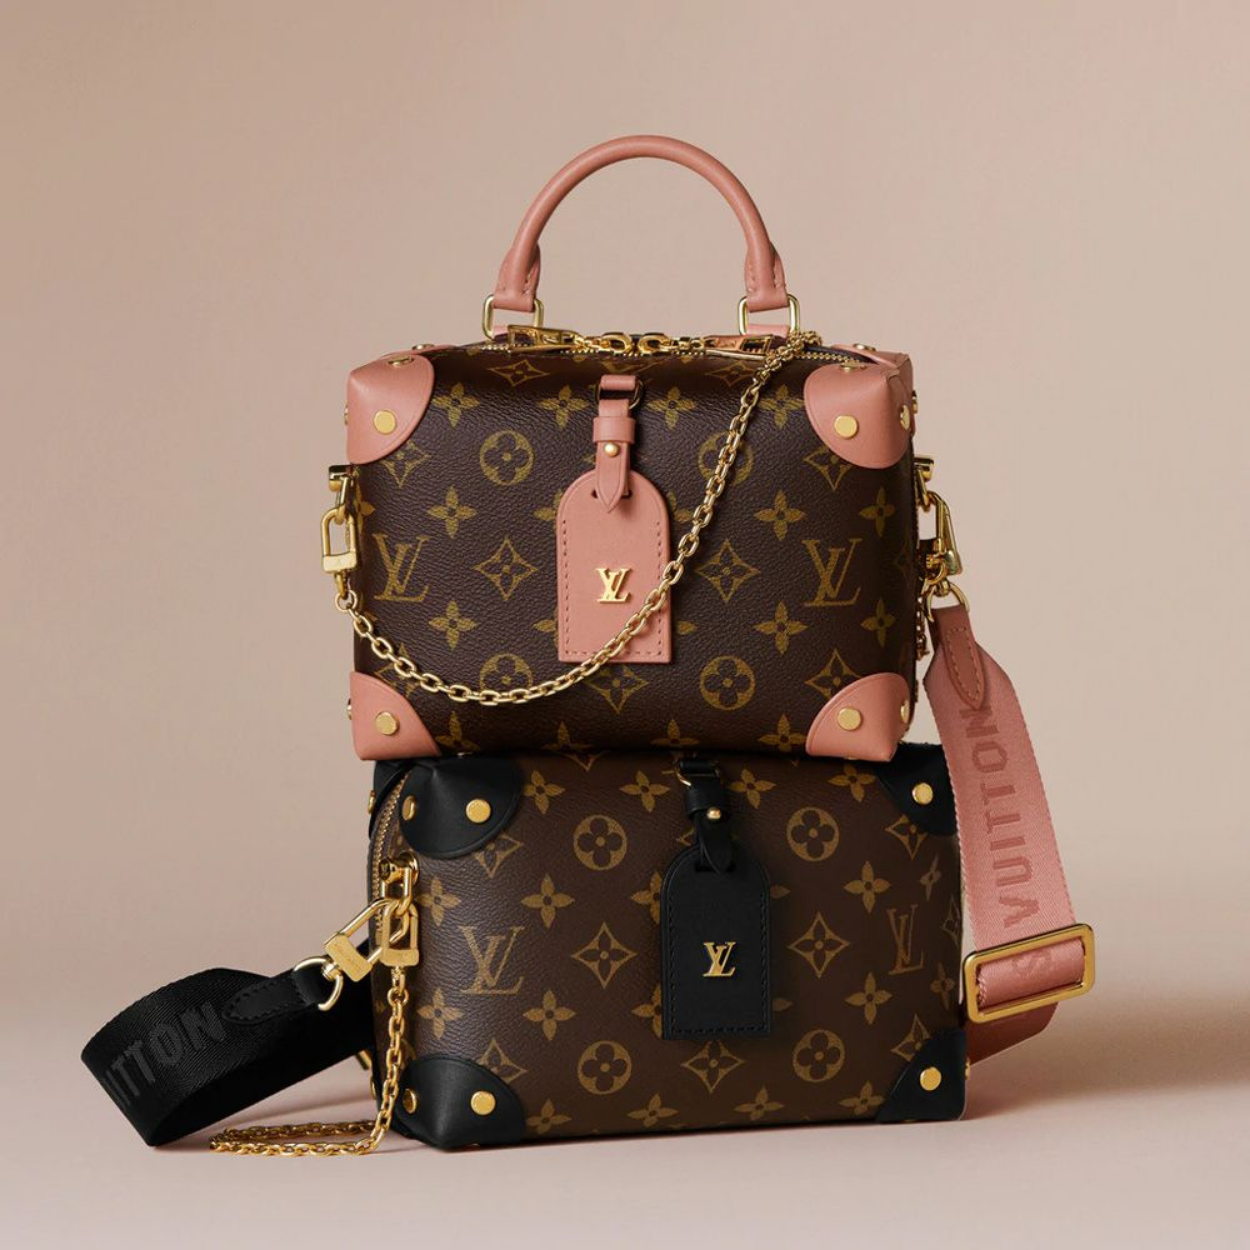 A bolsa original Louis Vuitton é feita de materiais de qualidade